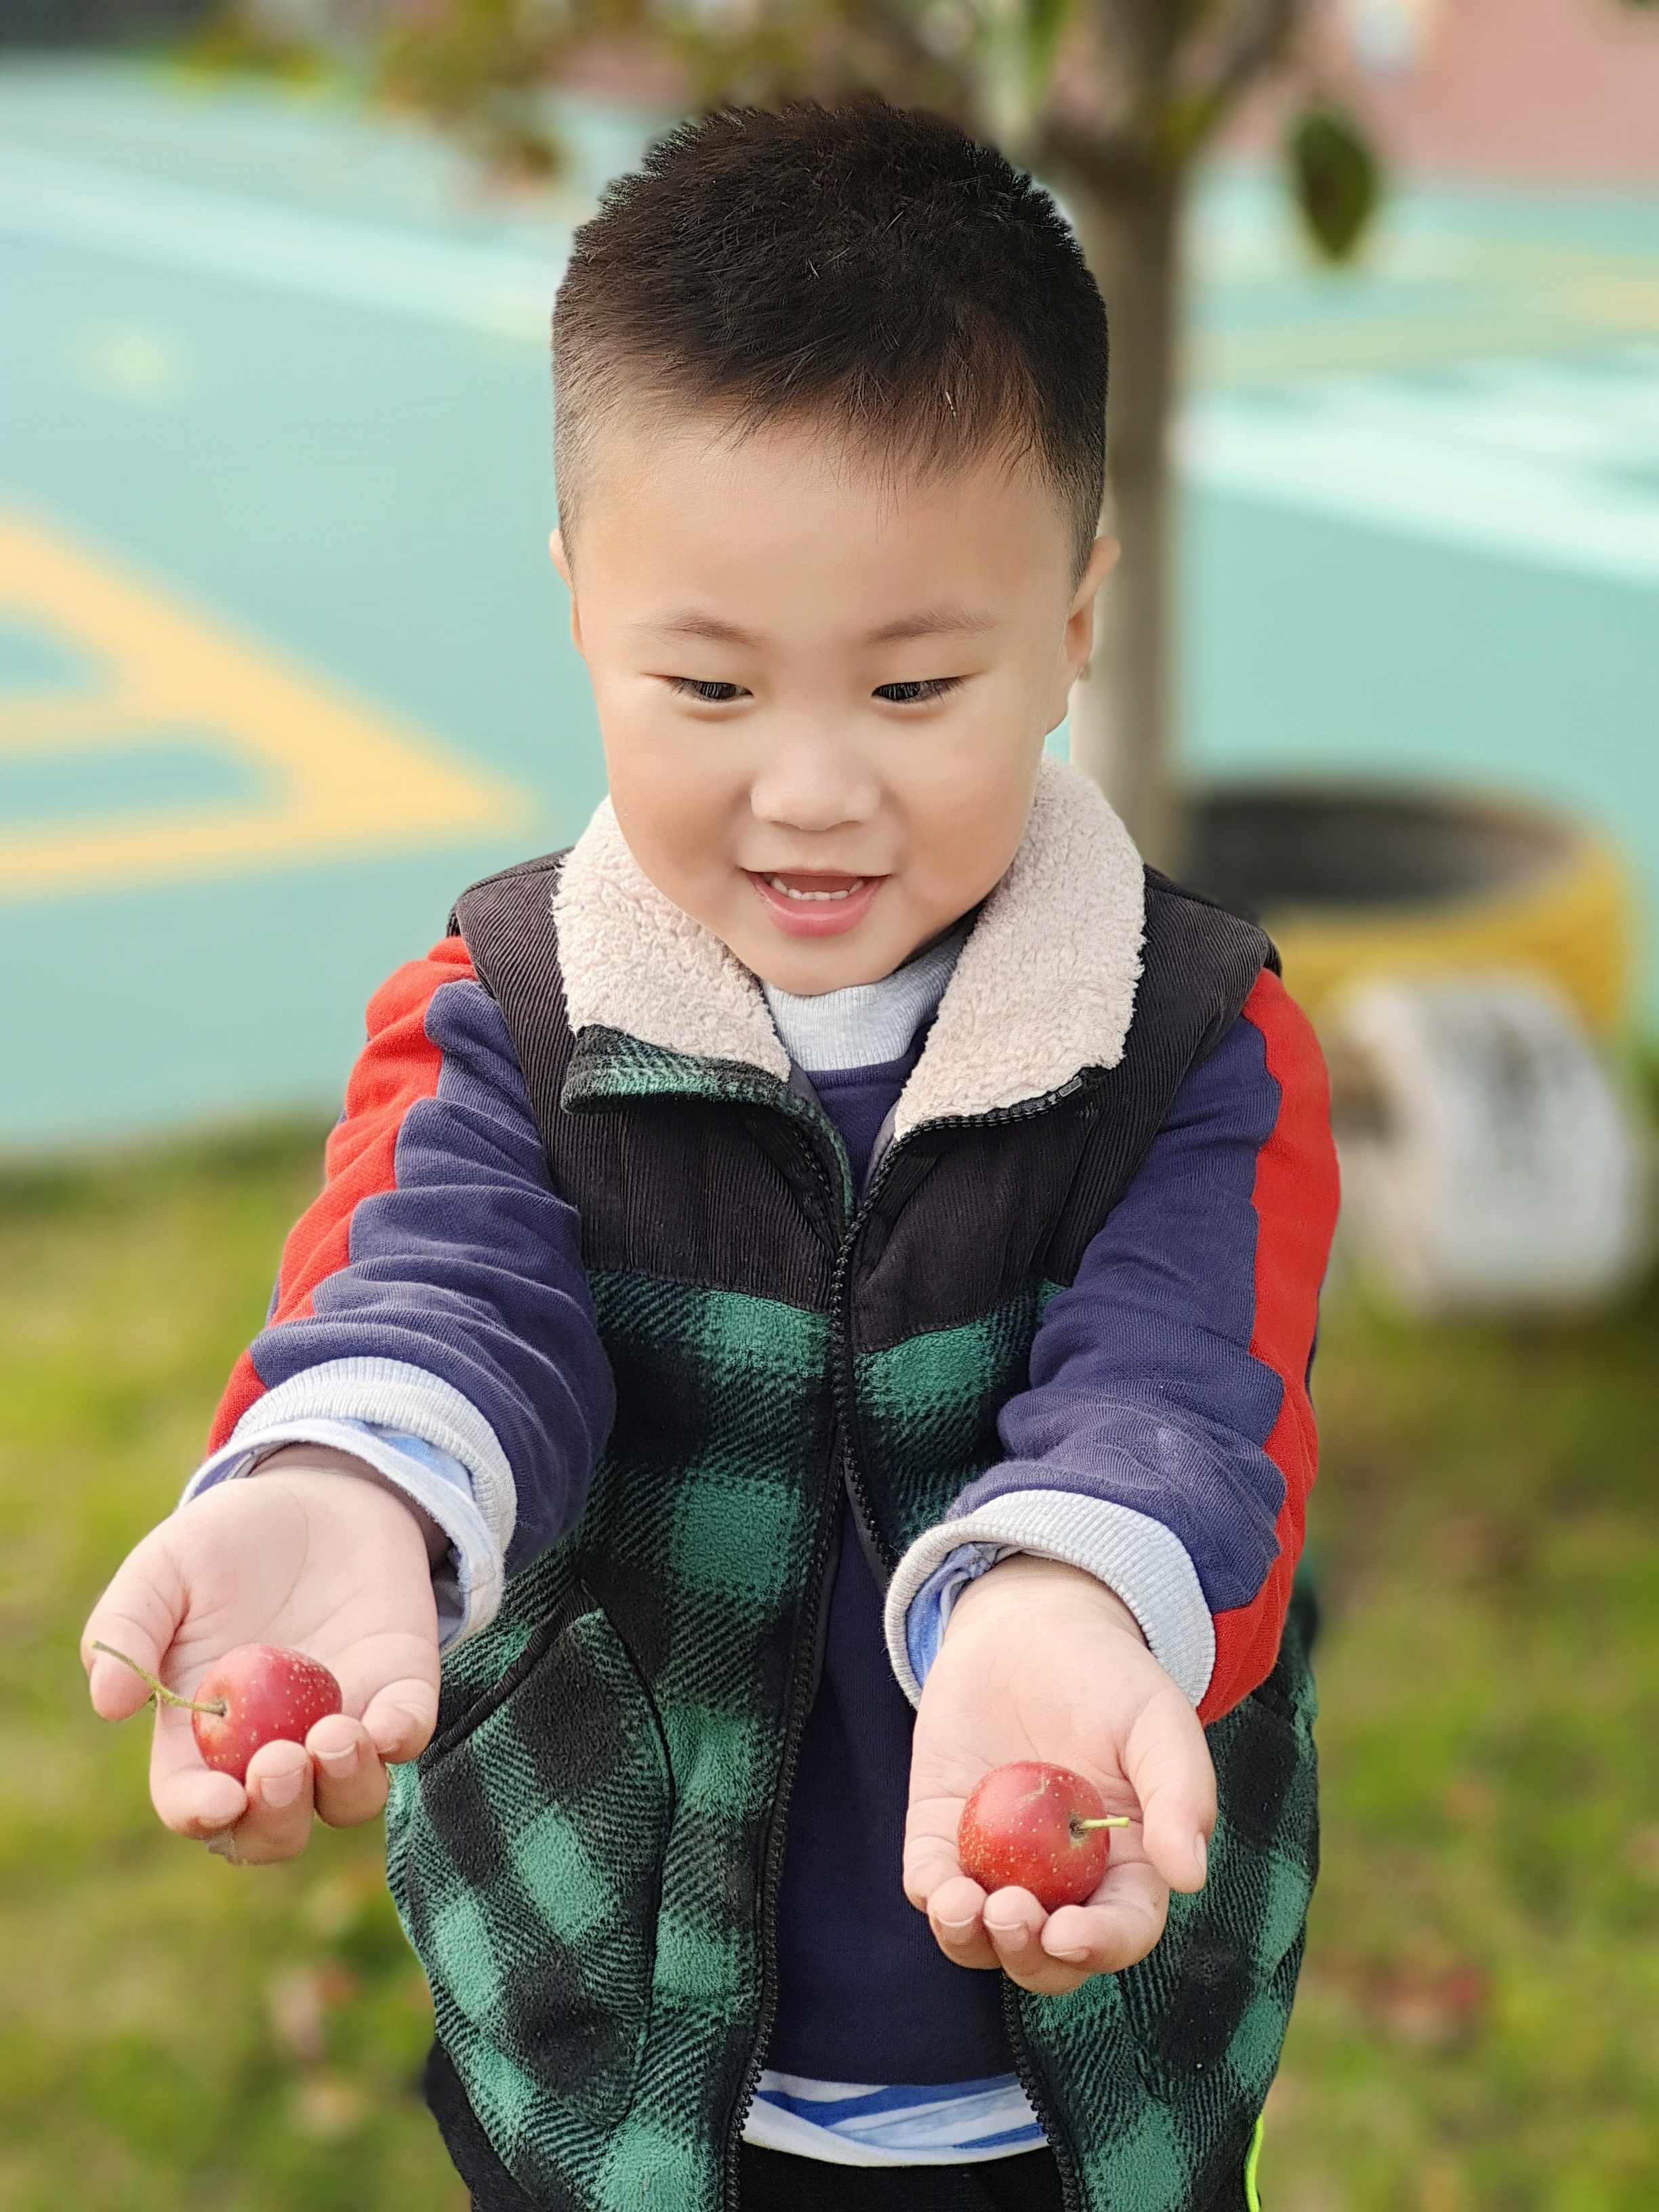 甜甜的幸福  ——瓦窑镇中心幼儿园的教育生长